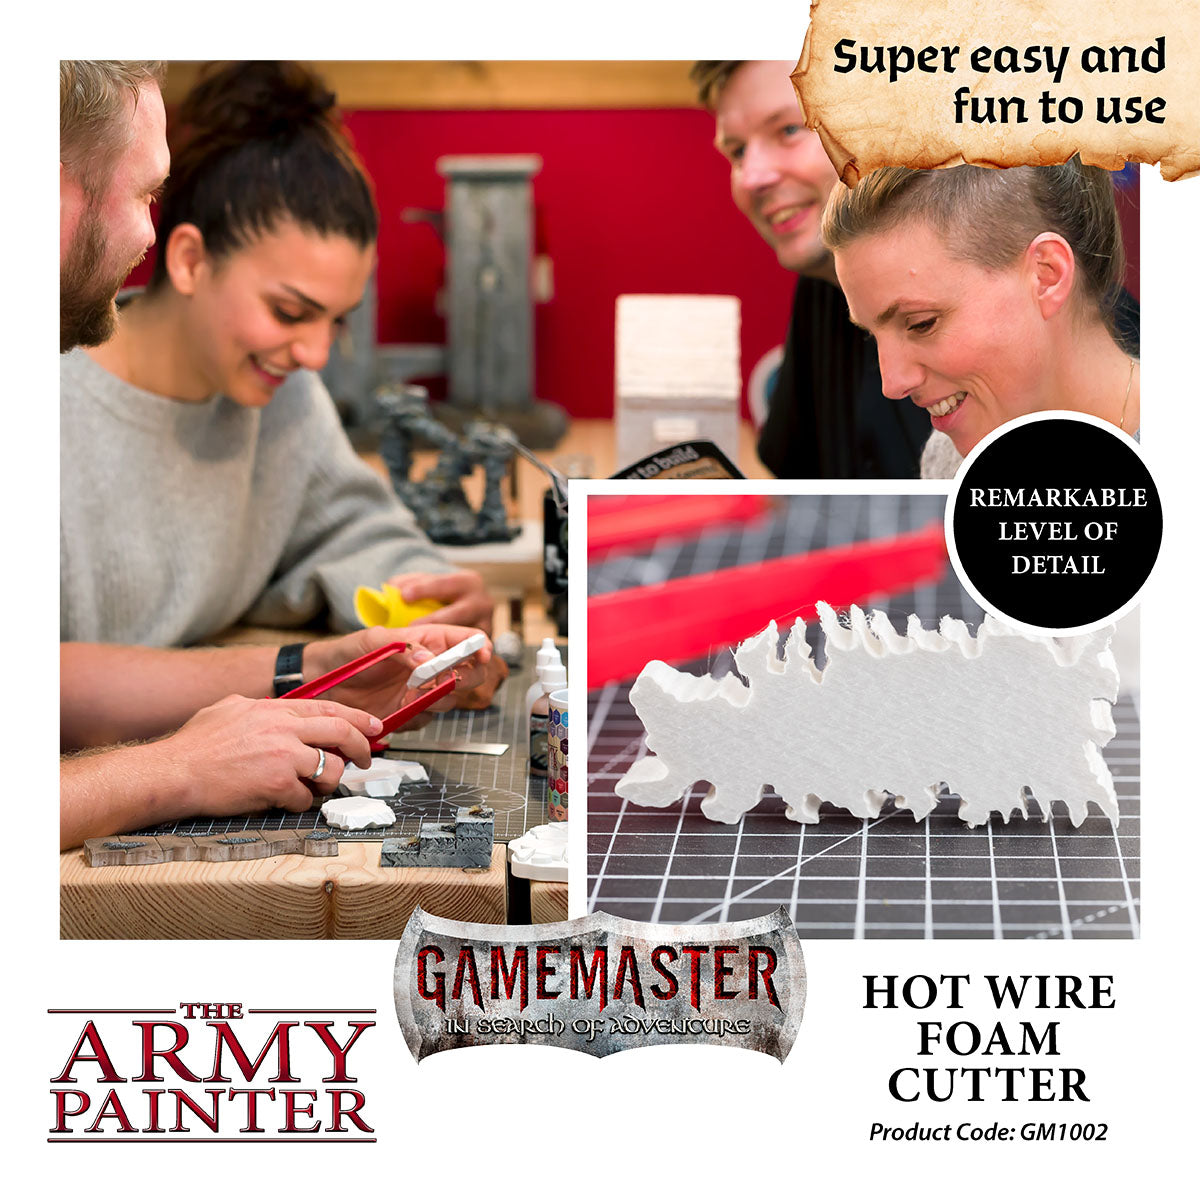 GameMaster: Hot wire foam cutter